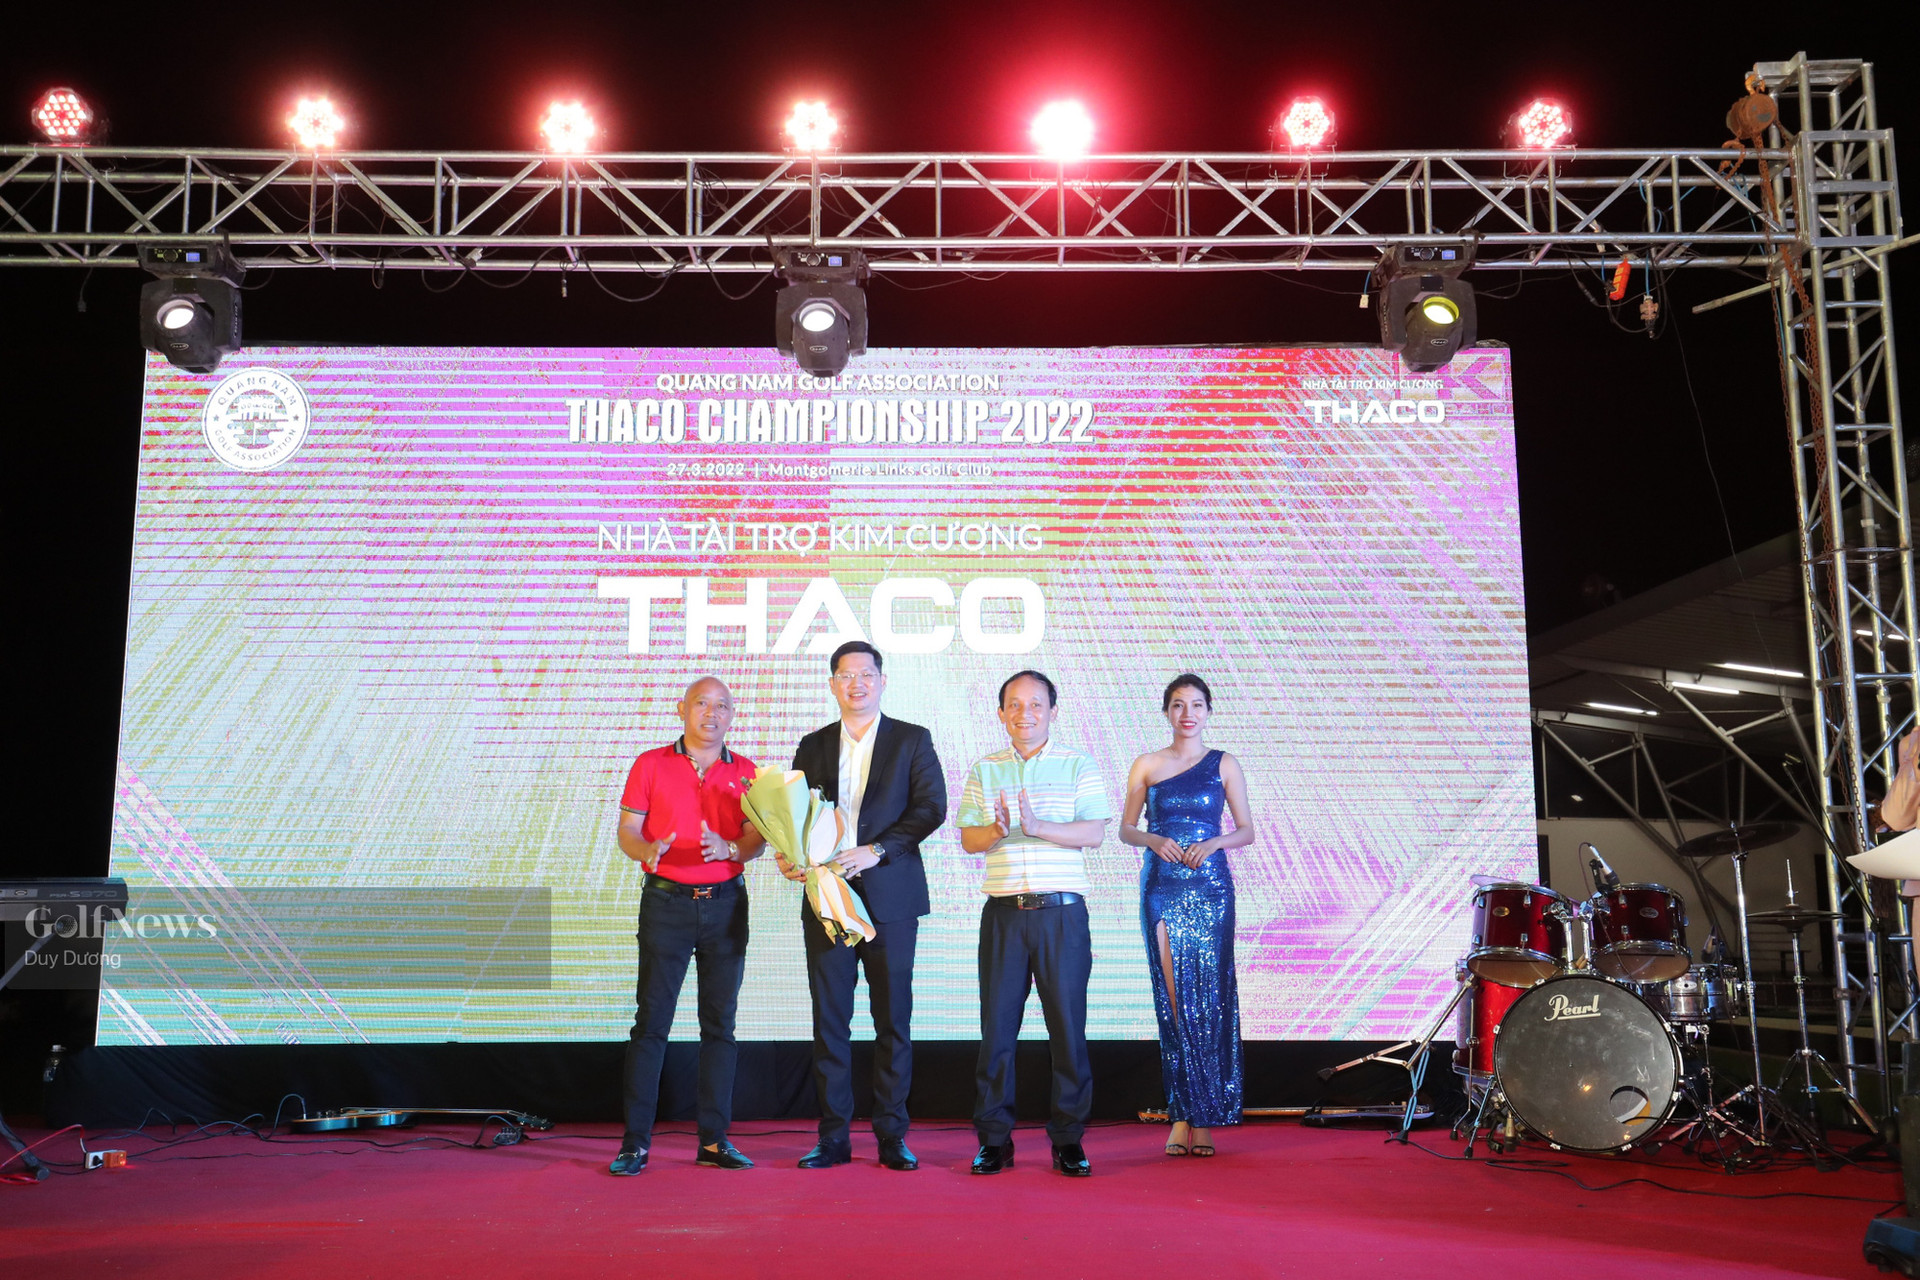 Thaco Championship – Khai màn chuỗi sự kiện của hội golf Quảng Nam trong năm 2022 - Ảnh 5.